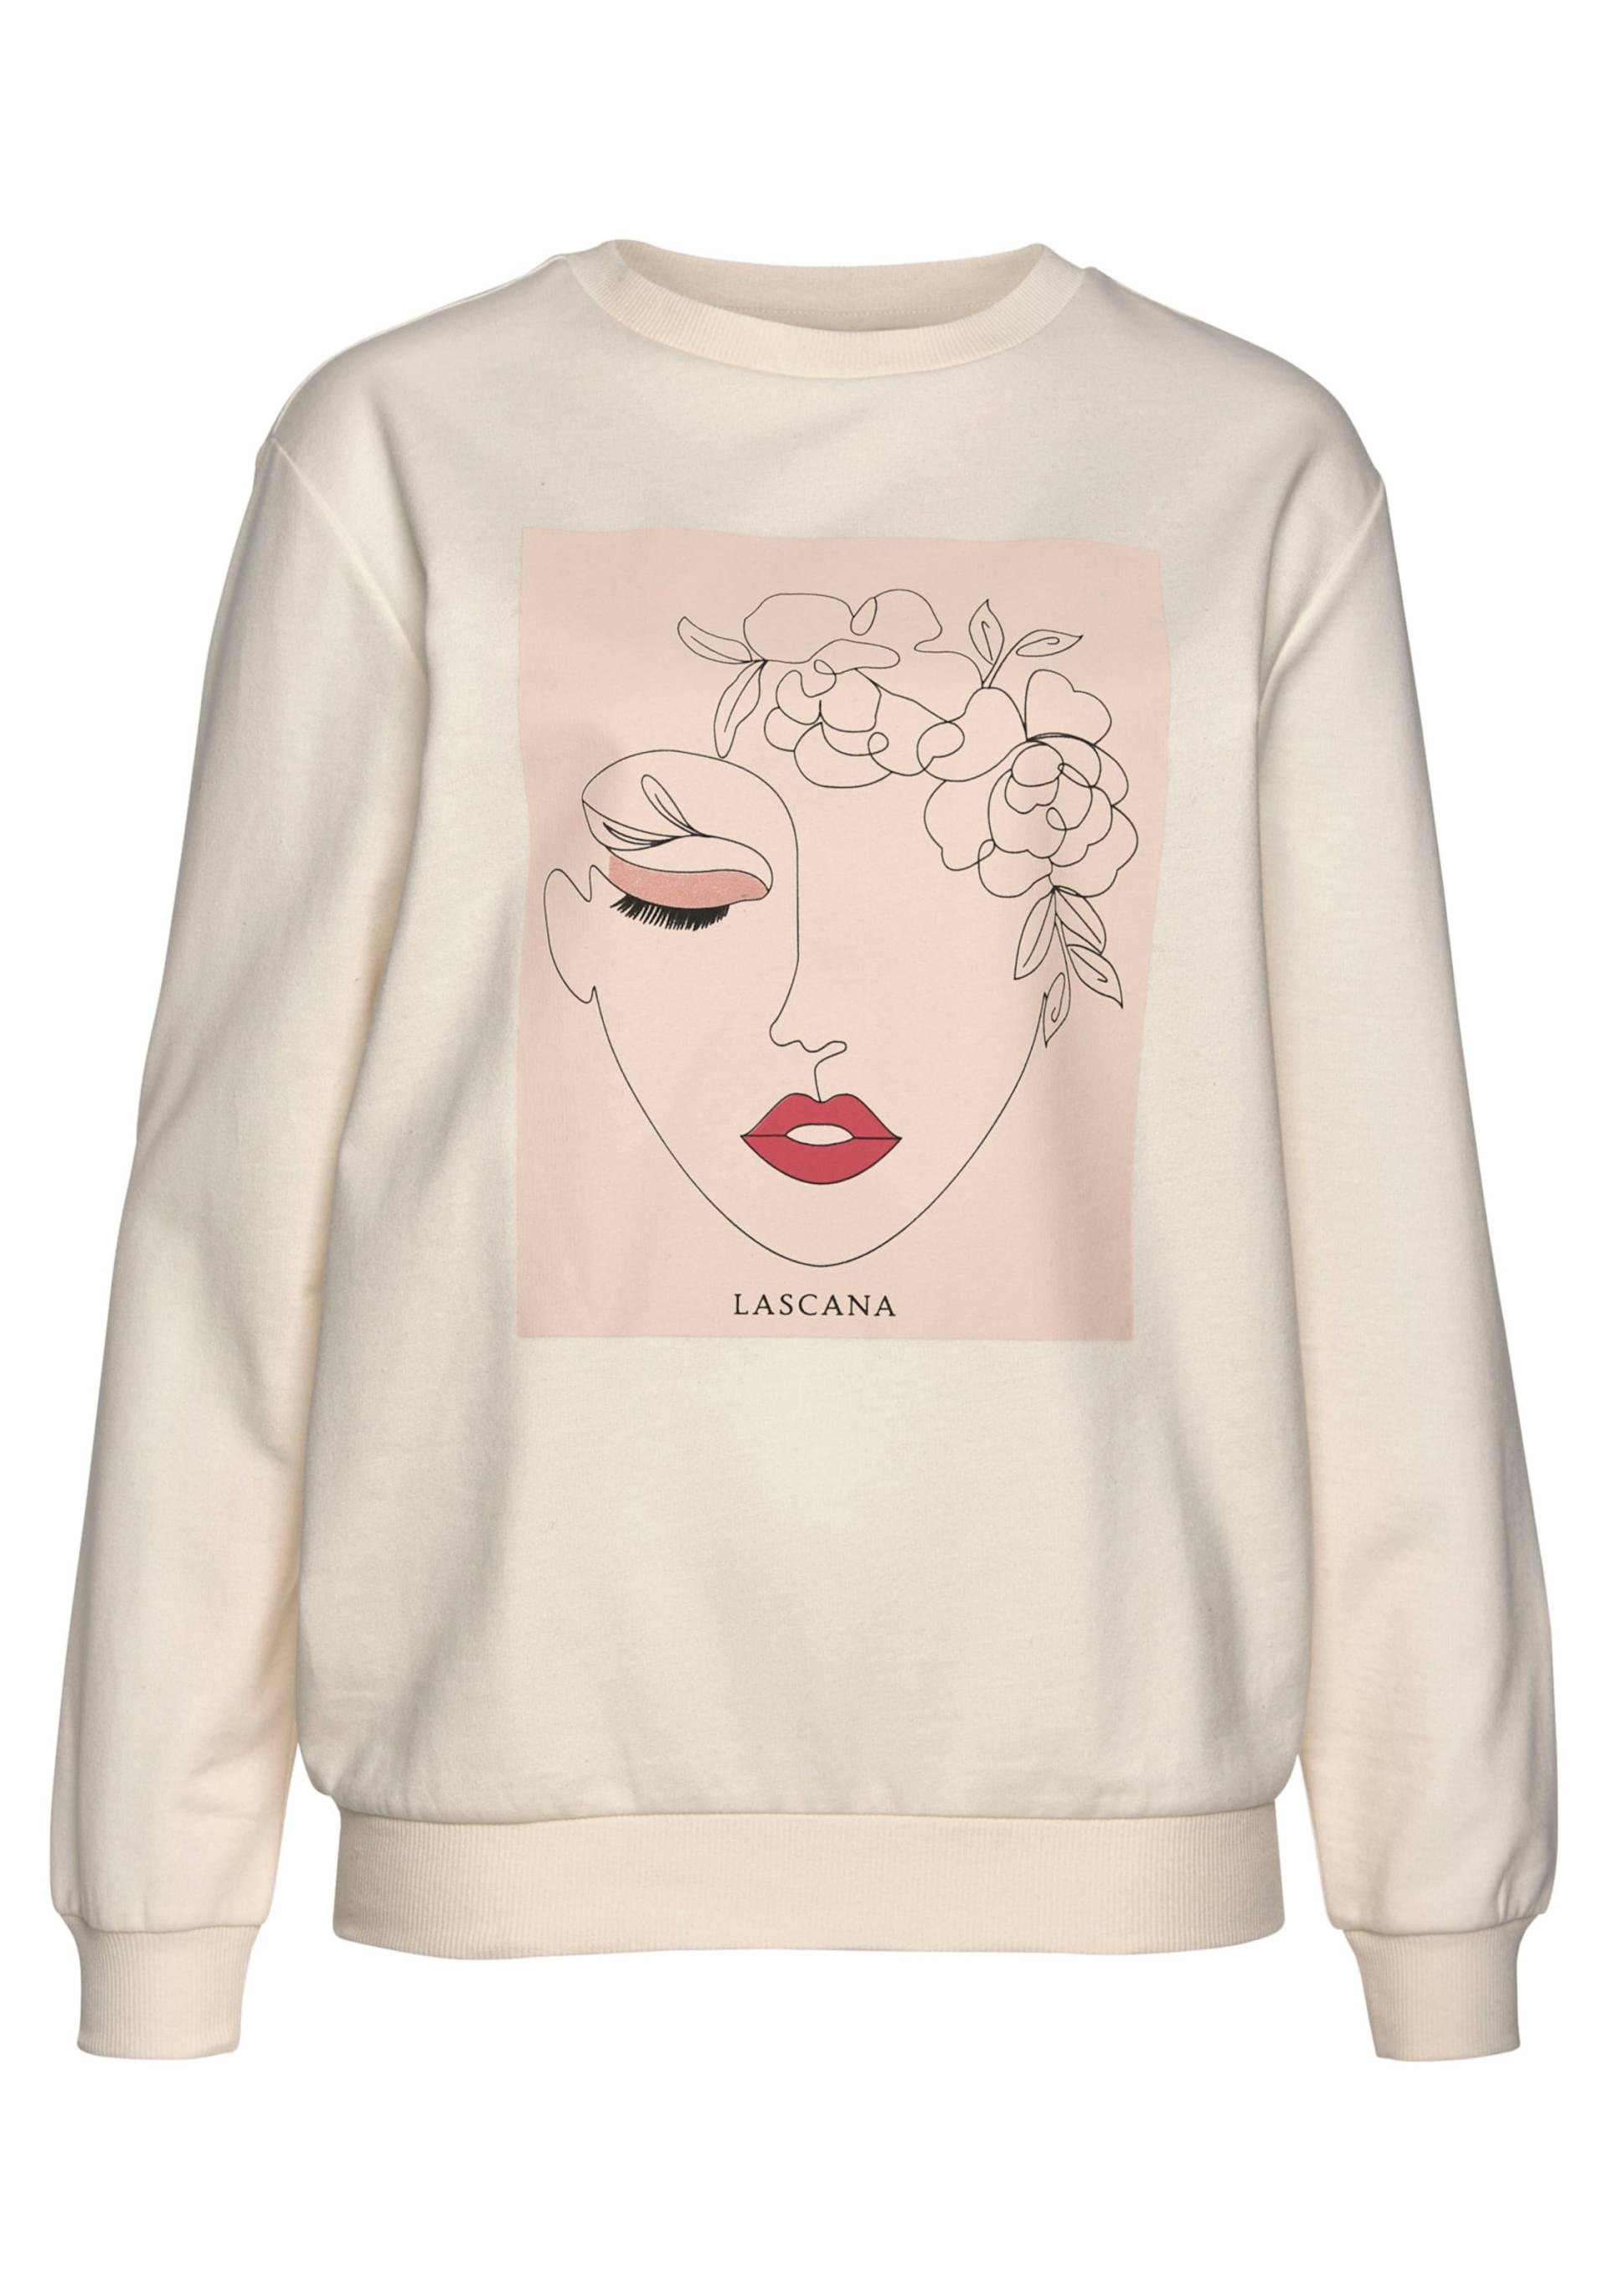 Sweatshirt in hellbeige-natur-hellrosa von LASCANA